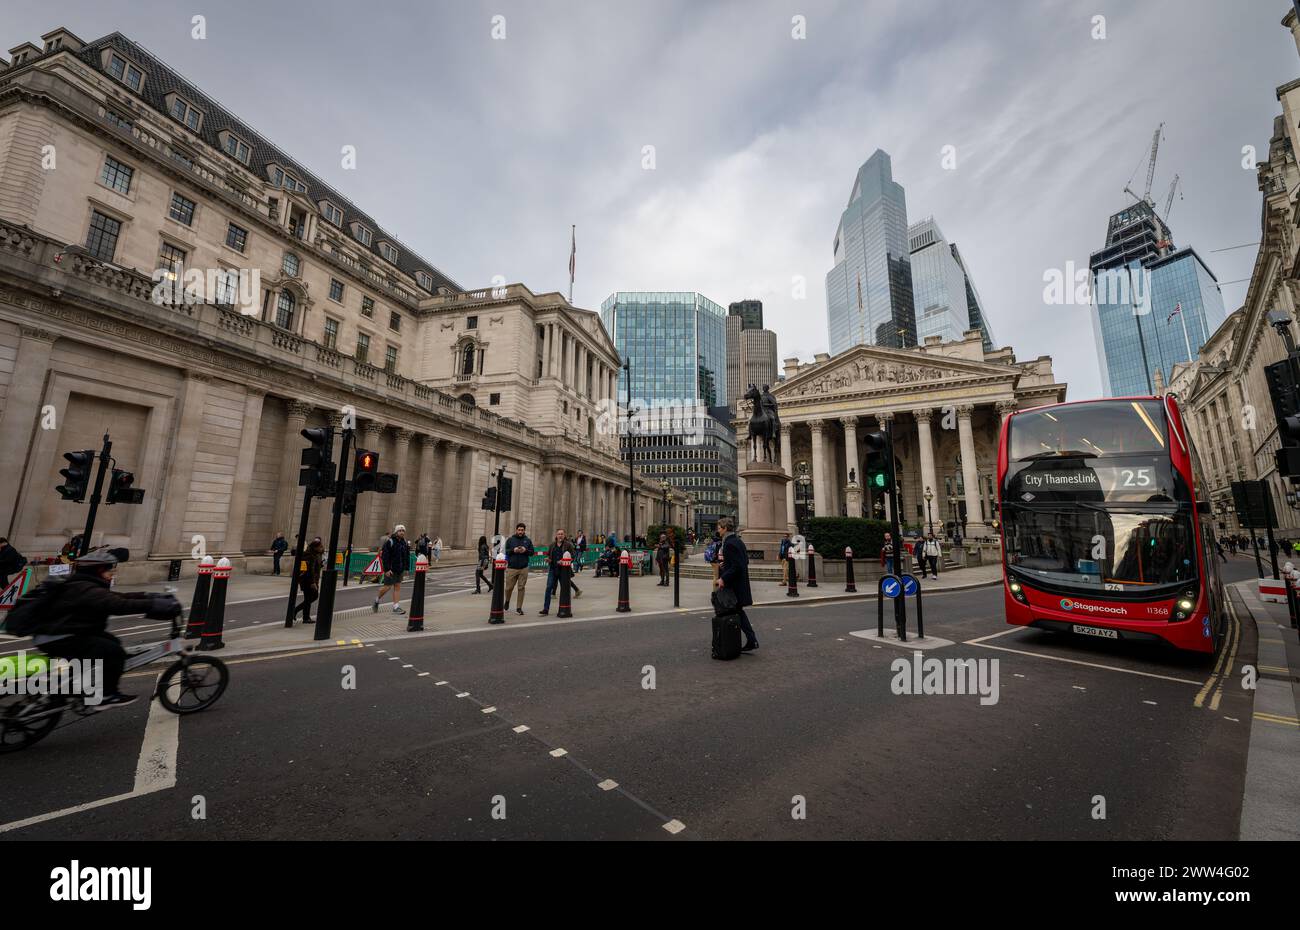 Londra, Regno Unito: Bank Junction nella City di Londra. Bank of England a sinistra, Royal Exchange Center e grattacieli alle spalle. Foto Stock